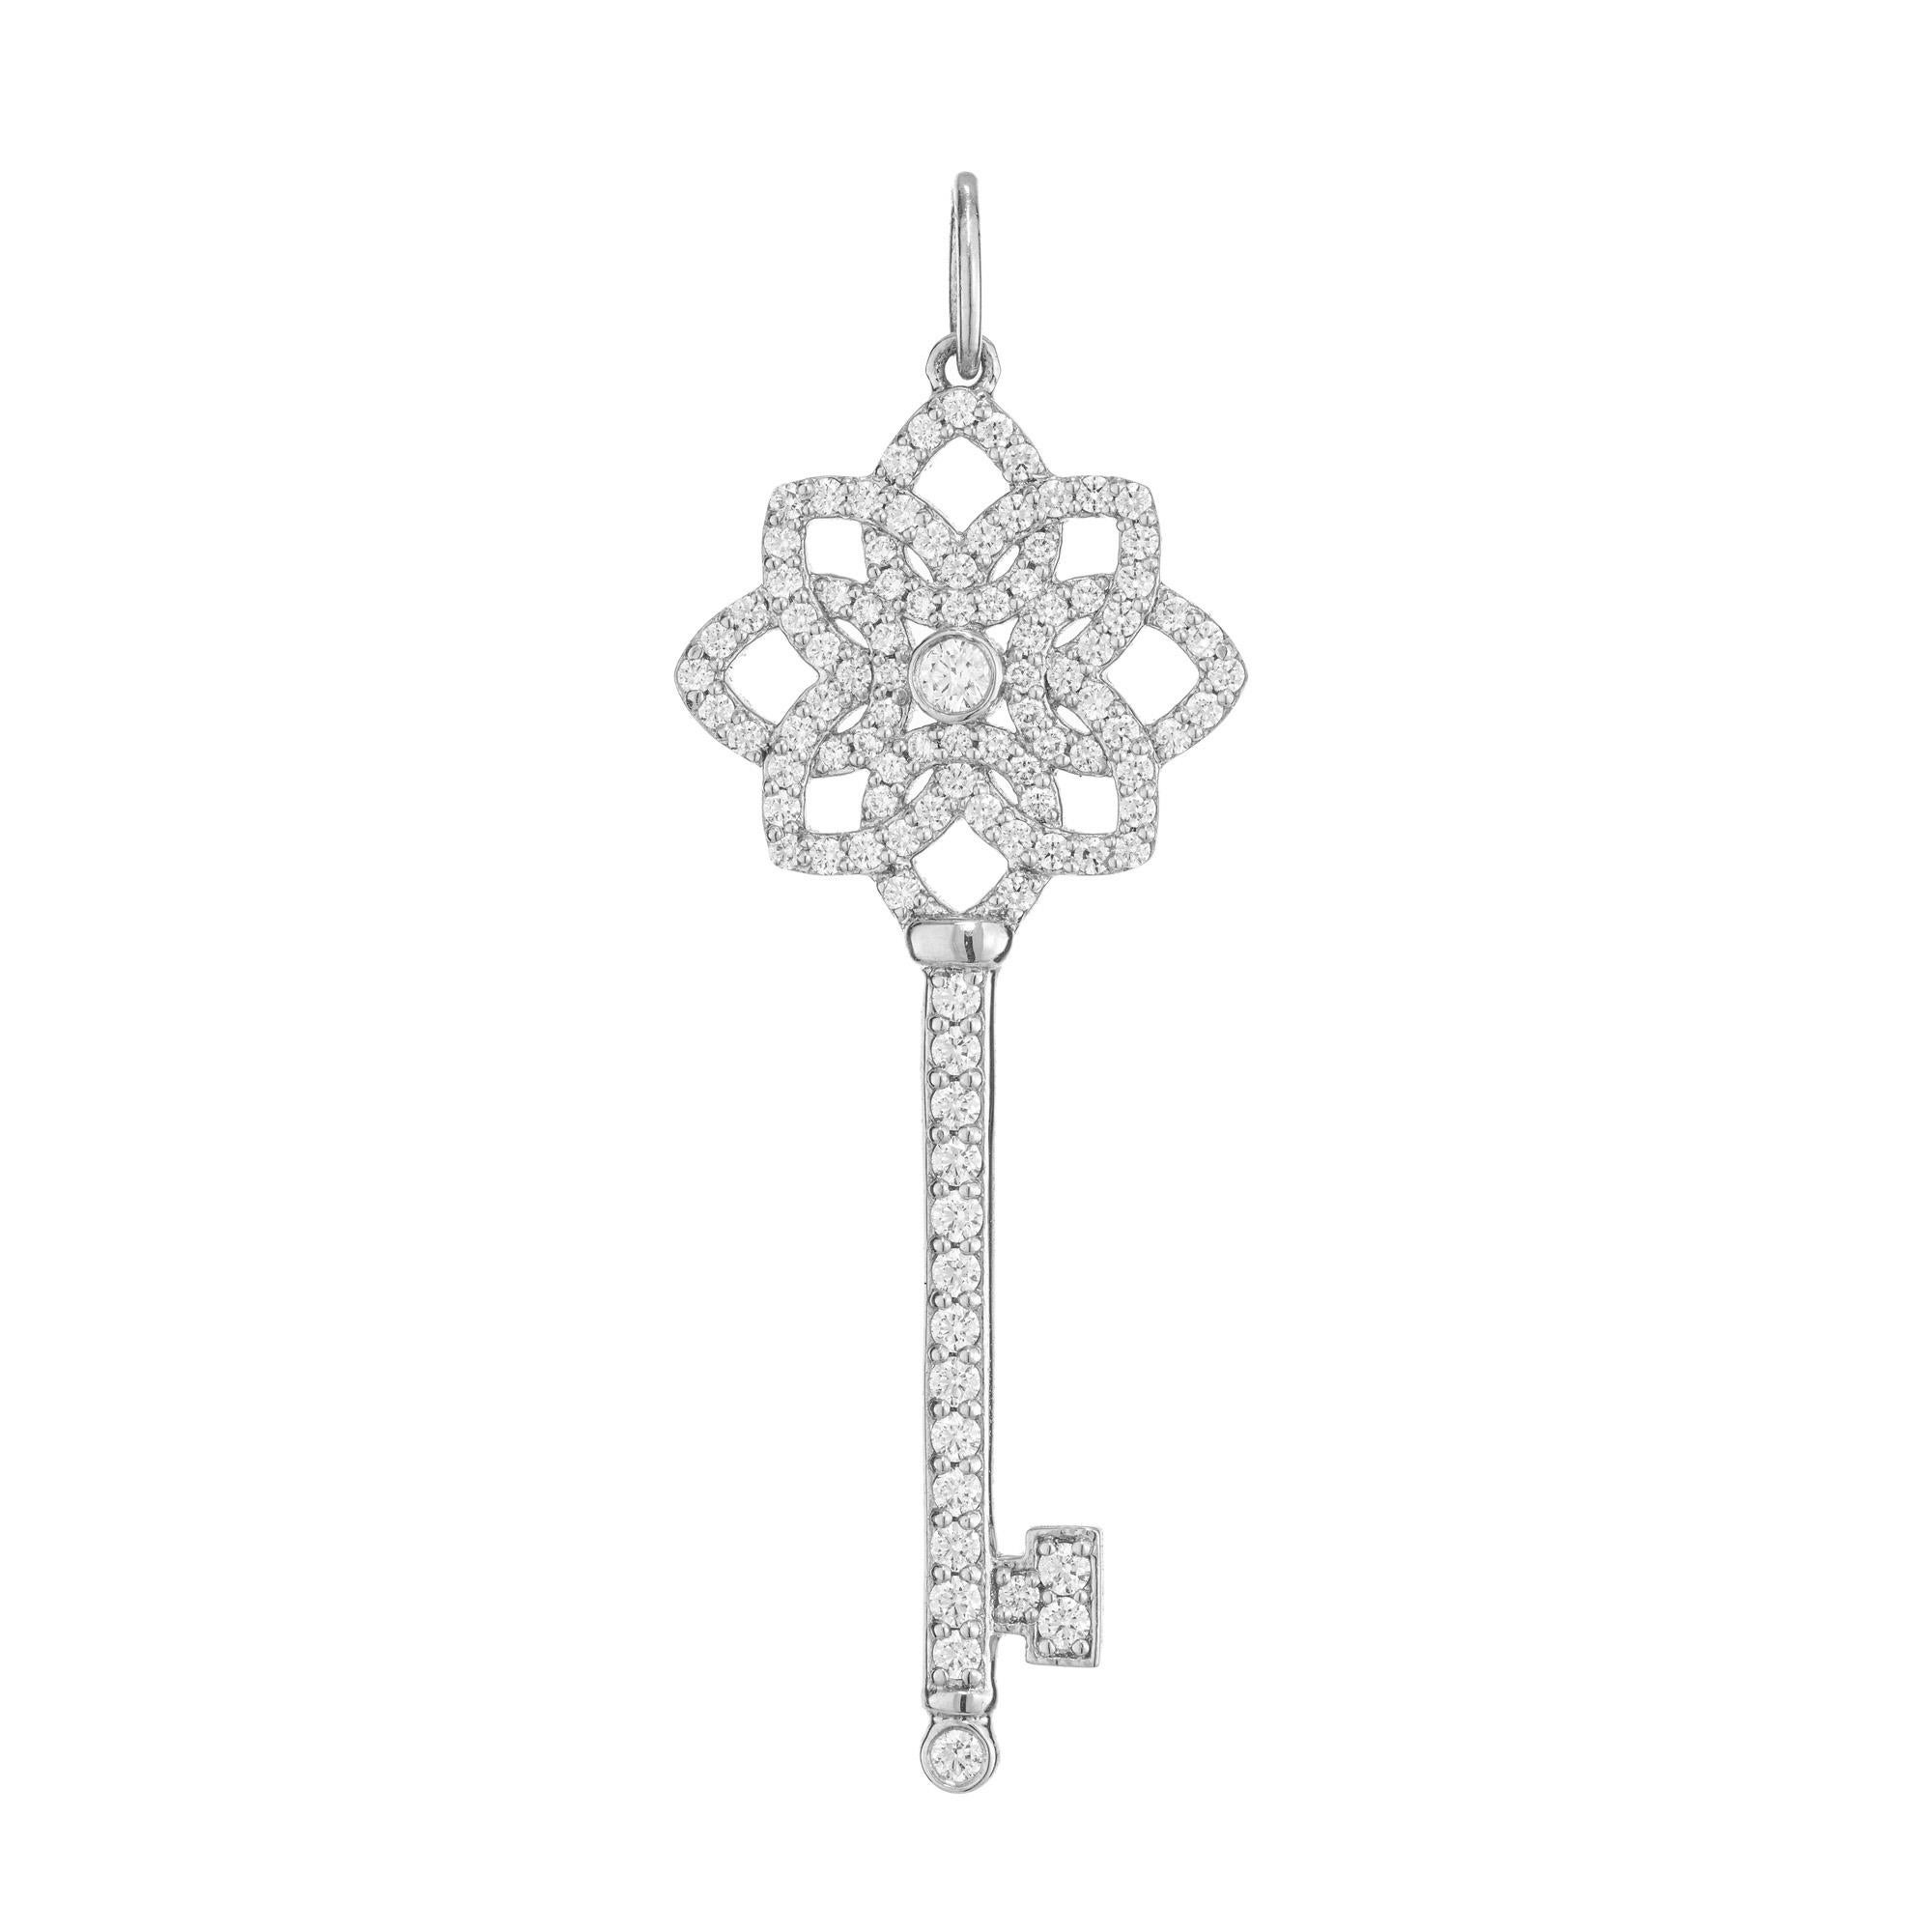 Ausgezeichnete Tiffany & Co Platin Diamant-Schlüsselanhänger, mittlere Größe, 1,5 Zoll lang. Dieses Modell im Ruhestand ist mit 107 Diamanten im Brillantschliff mit einem ungefähren Gesamtgewicht von 0,50 ct geschmückt. Nach Angaben von Tiffany's